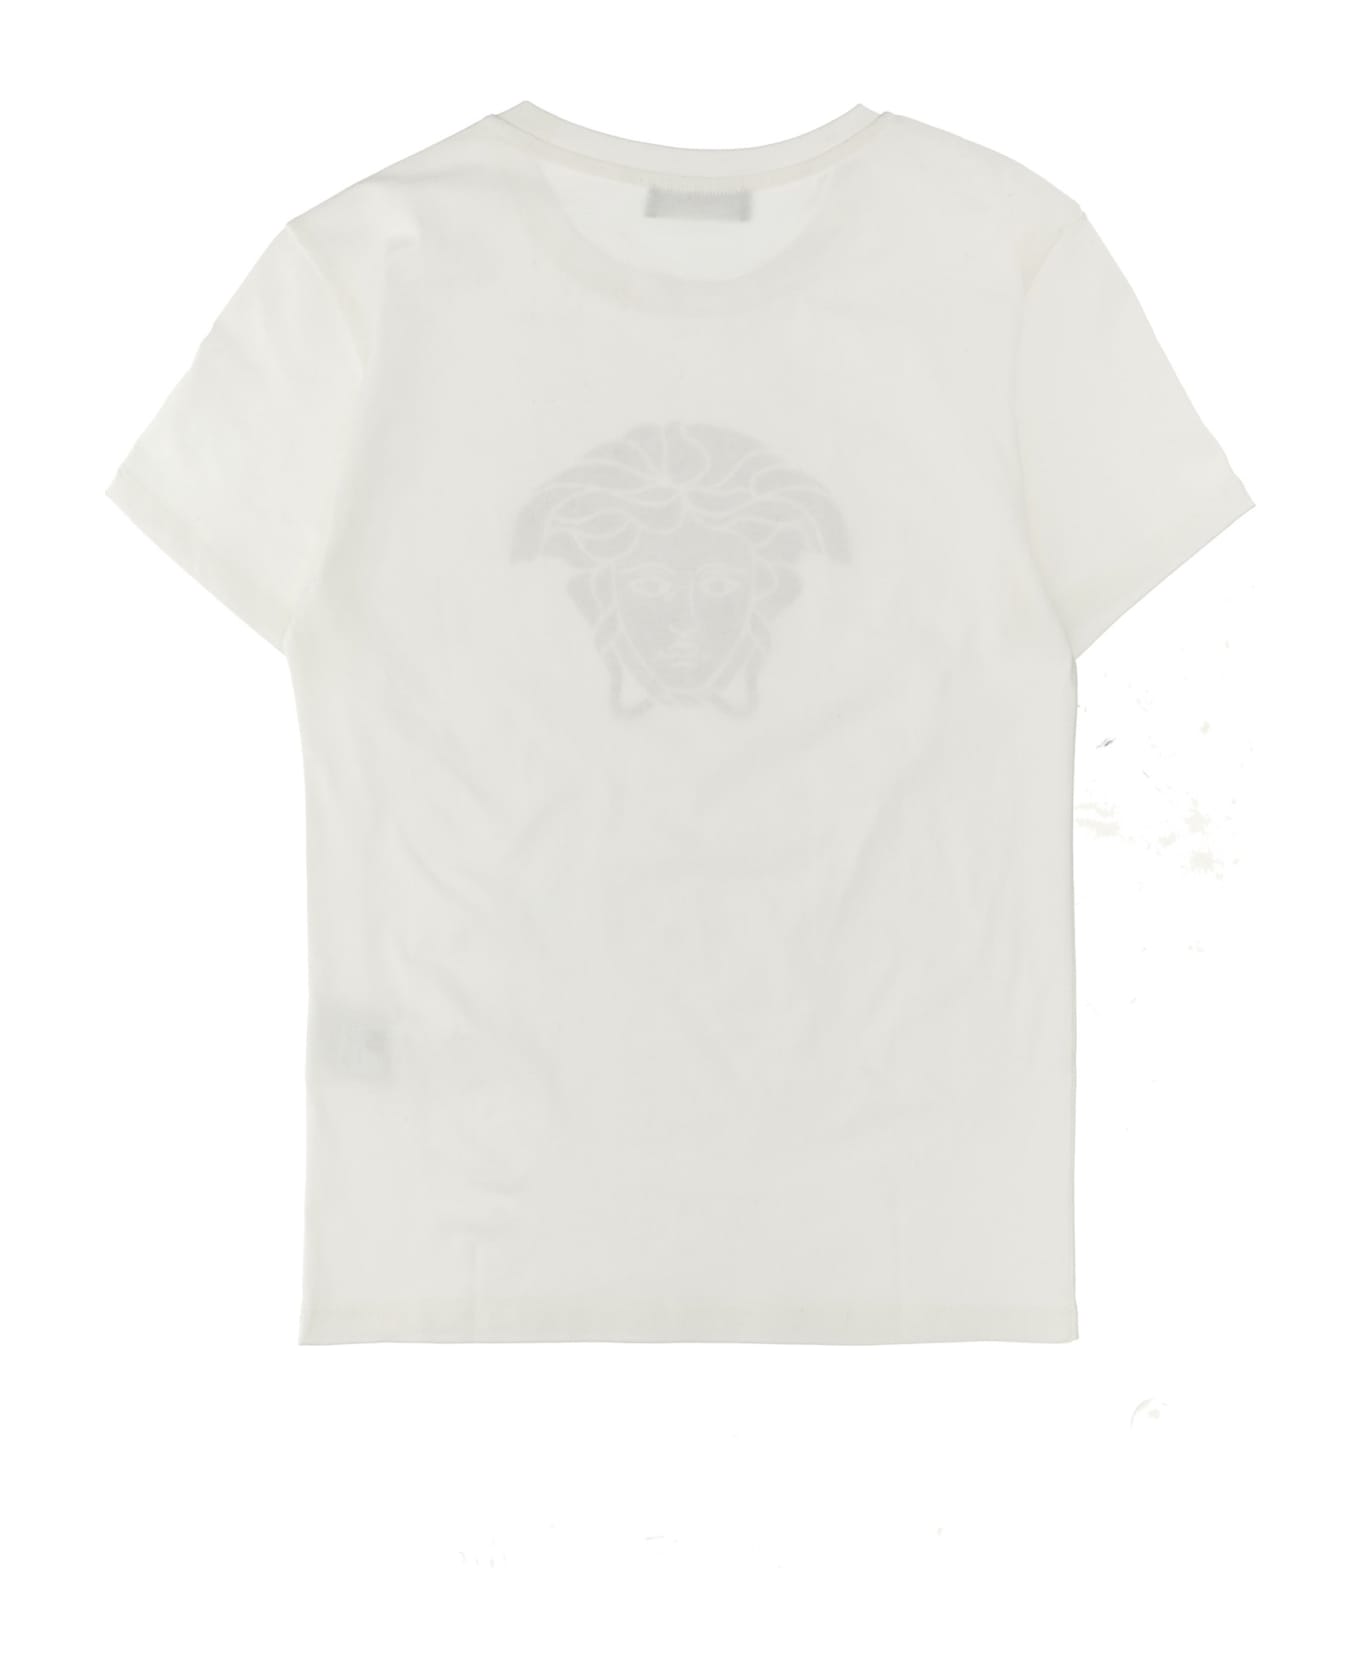 Versace Rhinestone Logo T-shirt - White